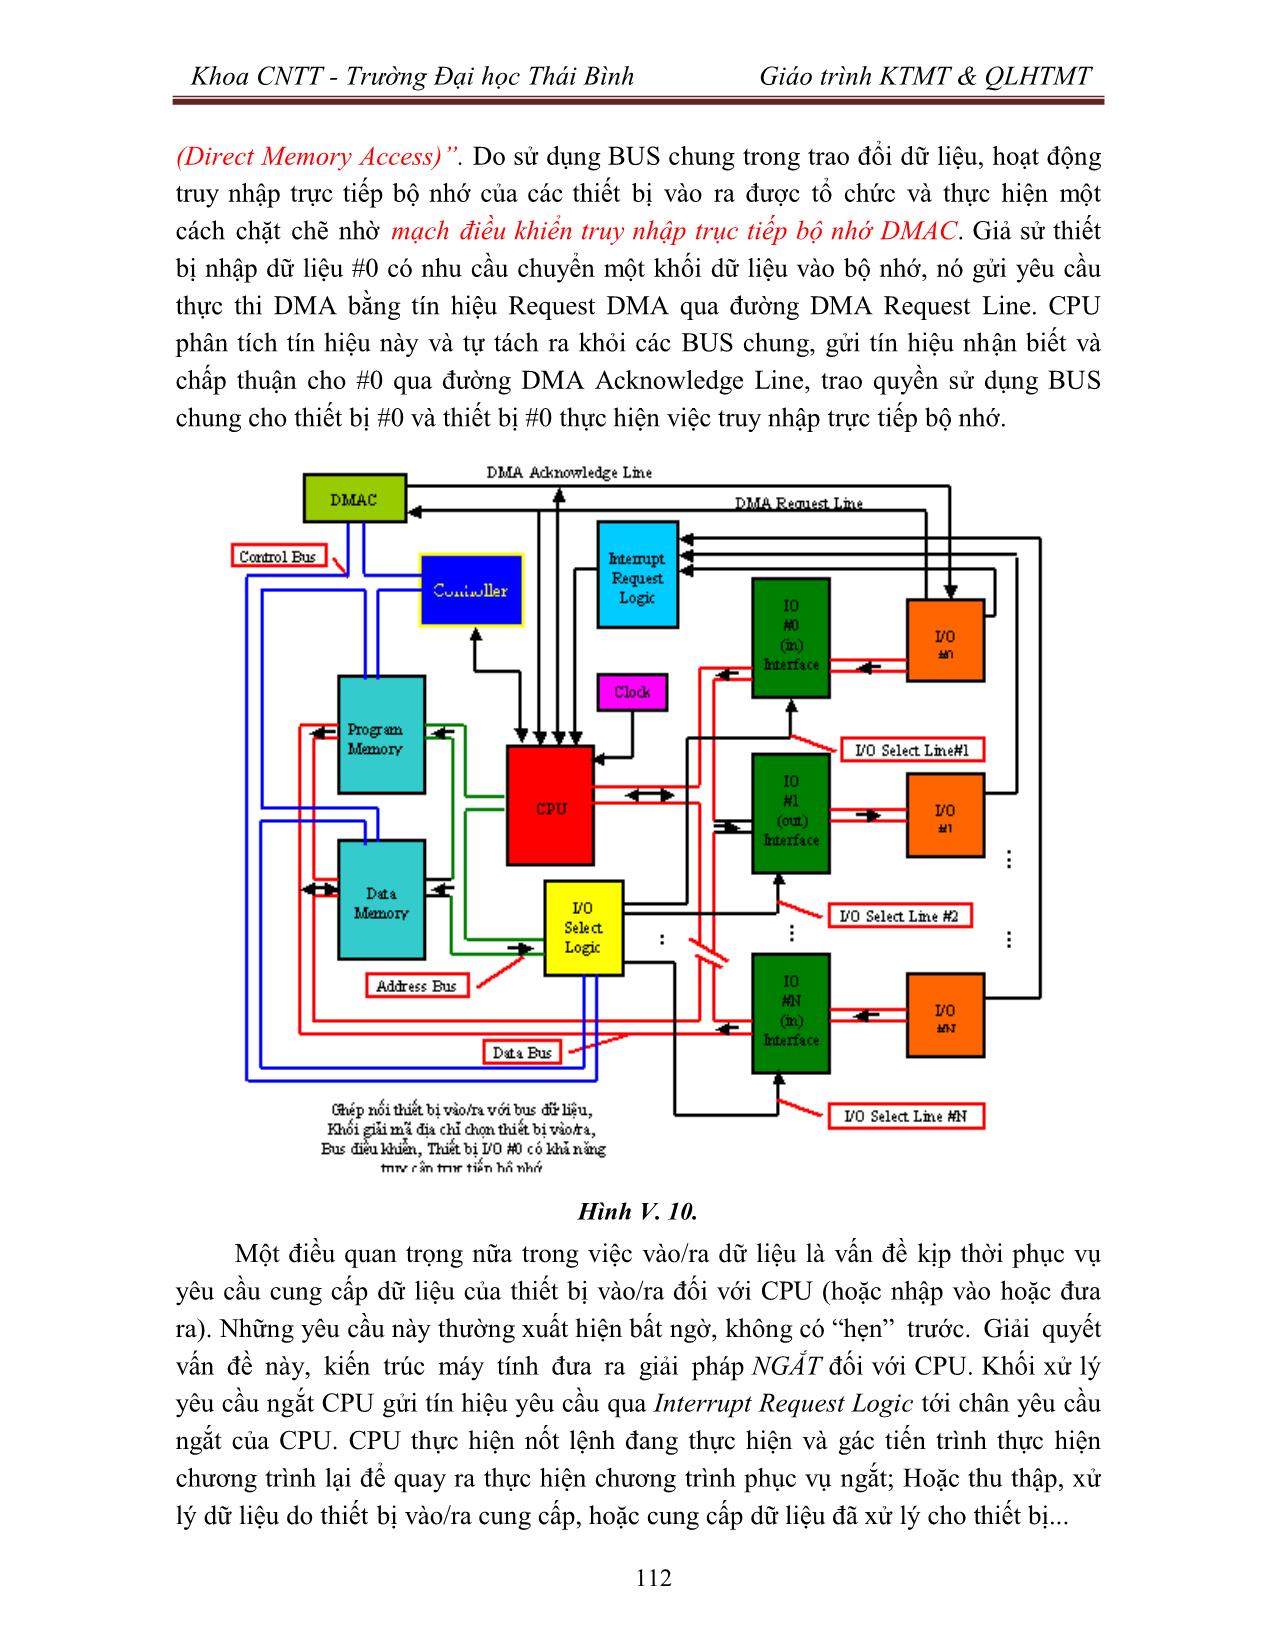 Giáo trình Kiến trúc máy tính & Quản lý hệ thống máy tính (Phần 2) trang 9